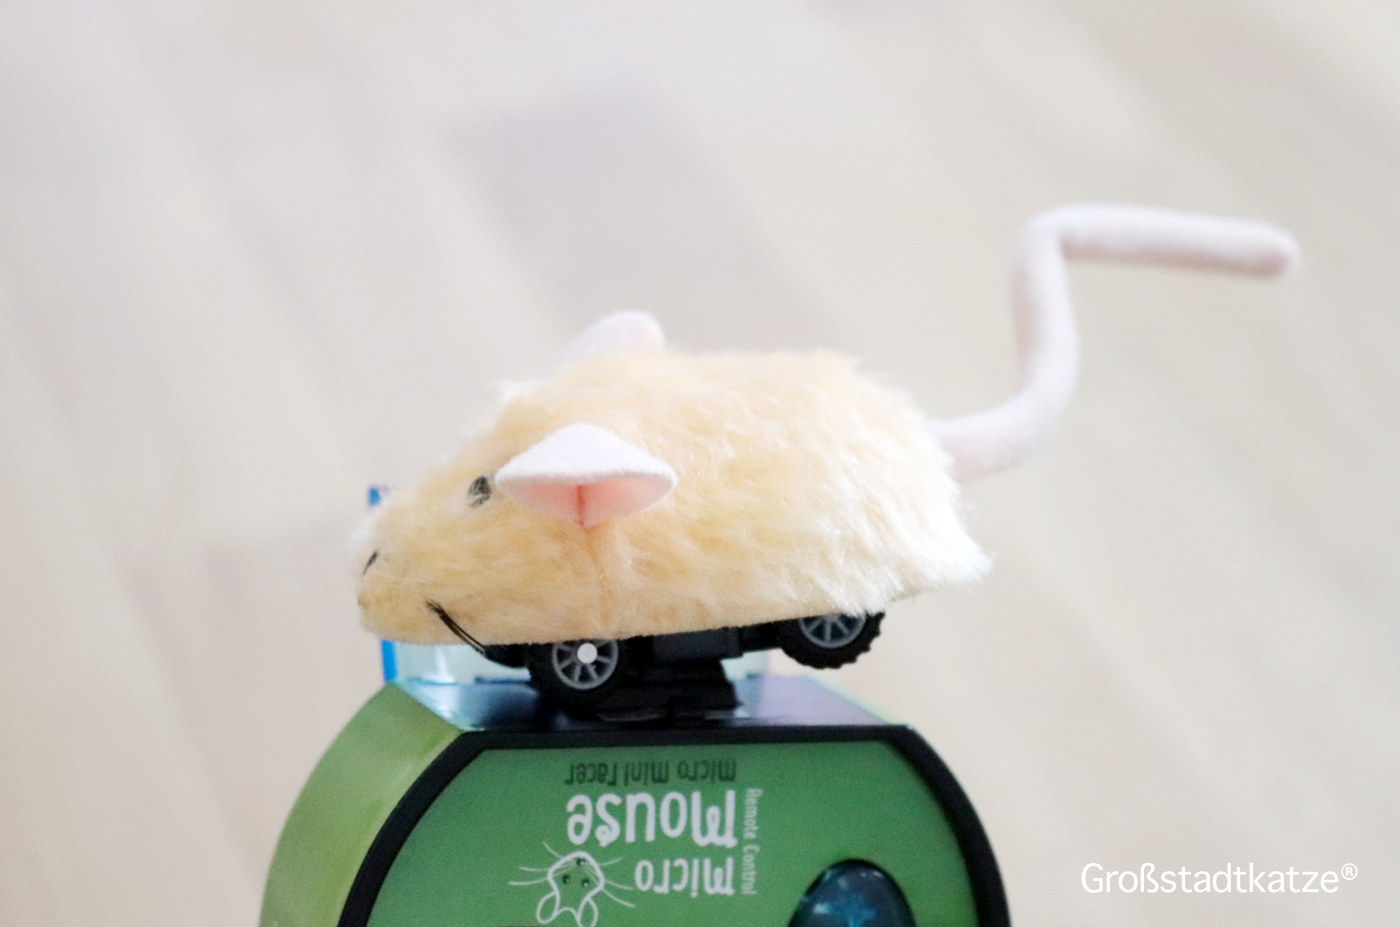 Micro Mouse Zooplus | Katzenspielzeug Fernsteuerung | Spielzeug Maus